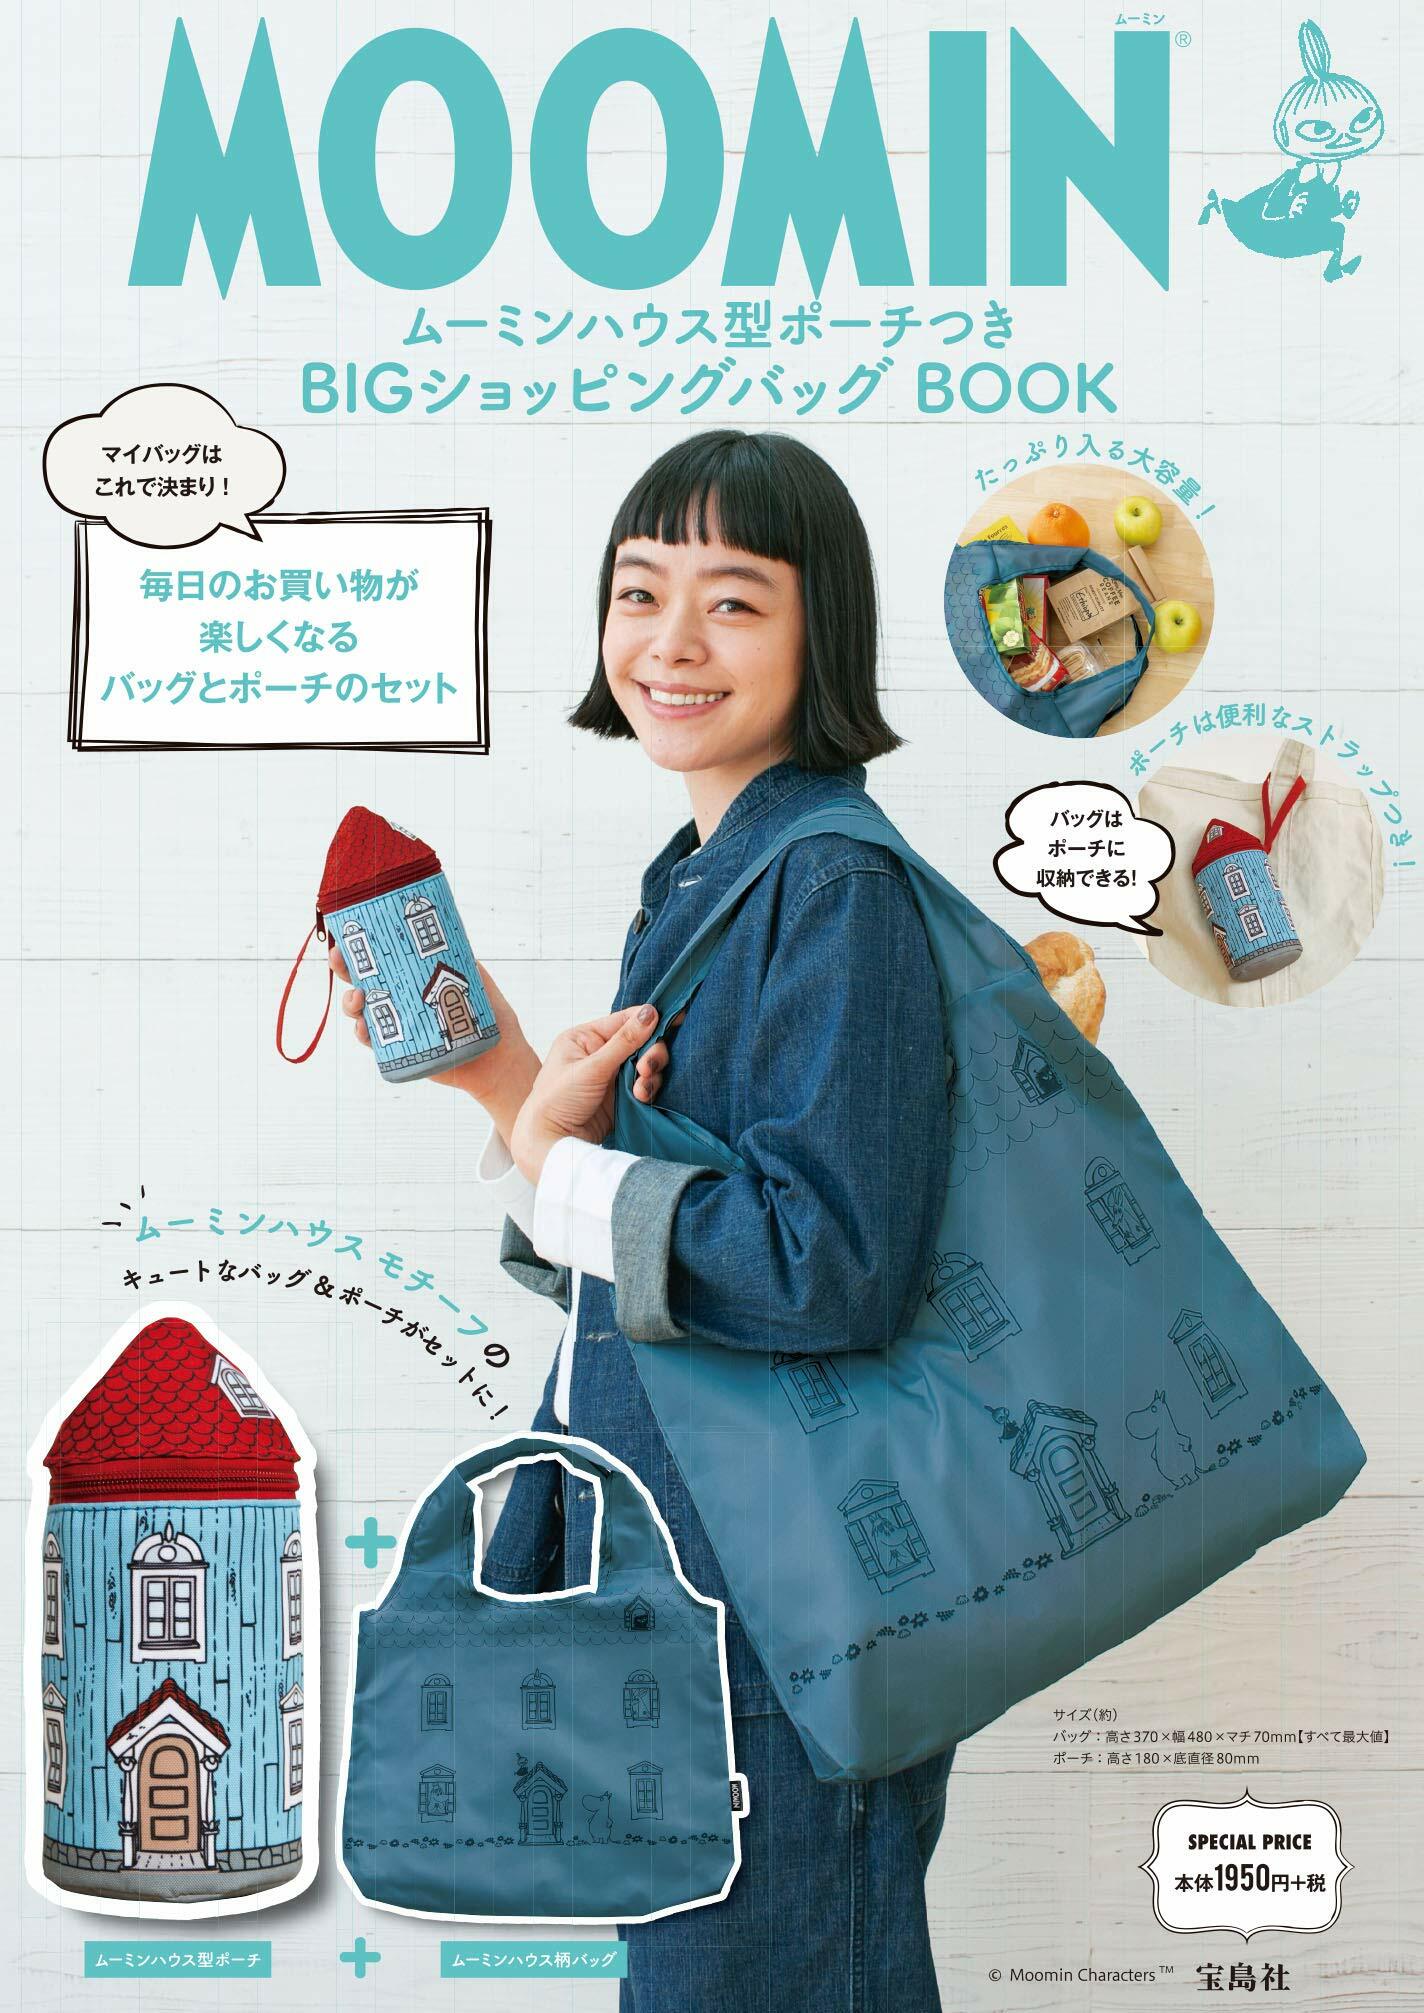 MOOMIN ム-ミンハウス型ポ-チつき BIGショッピングバッグ BOOK (バラエティ)